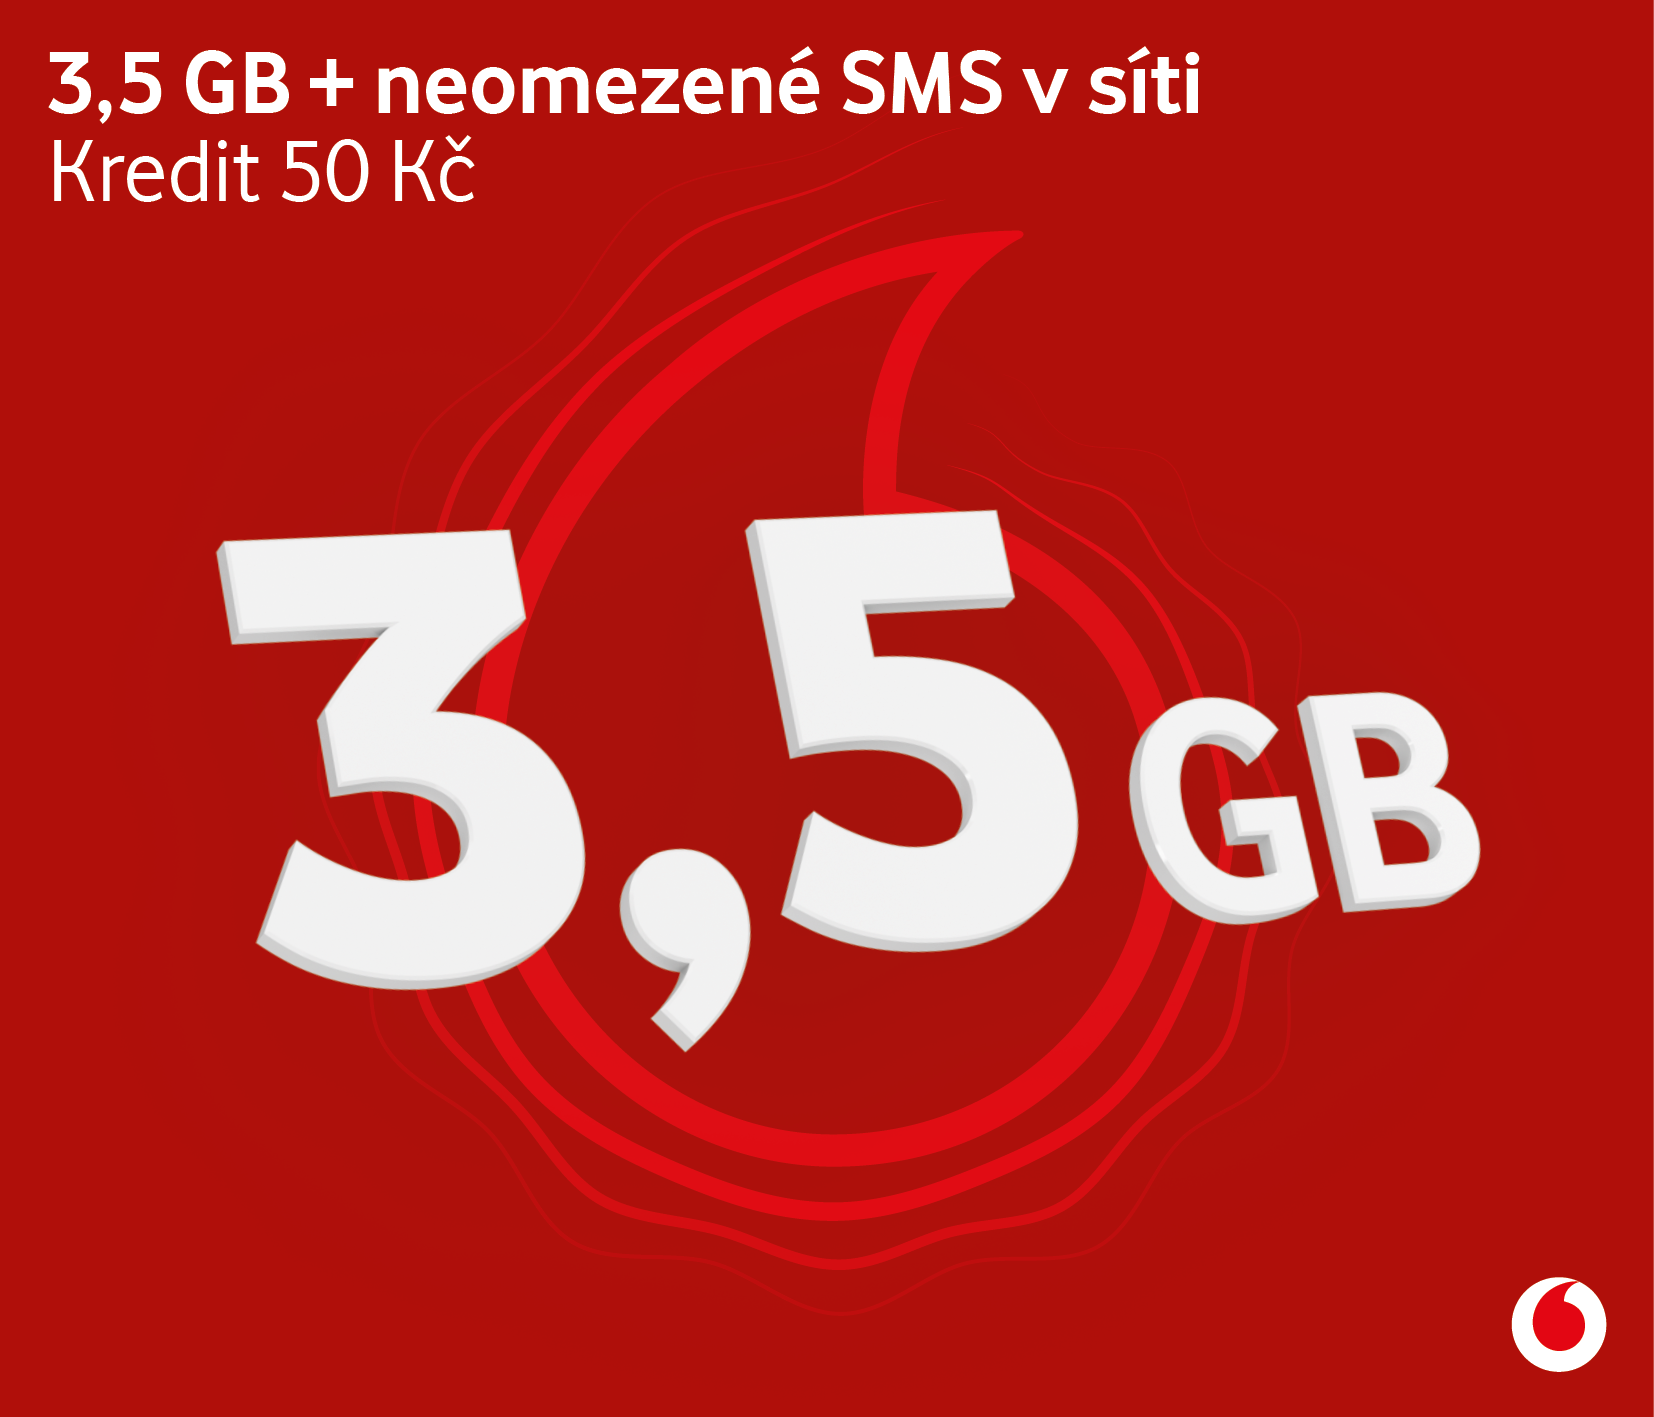 Předplacená SIM karta Vodafone 30: edice Datuj